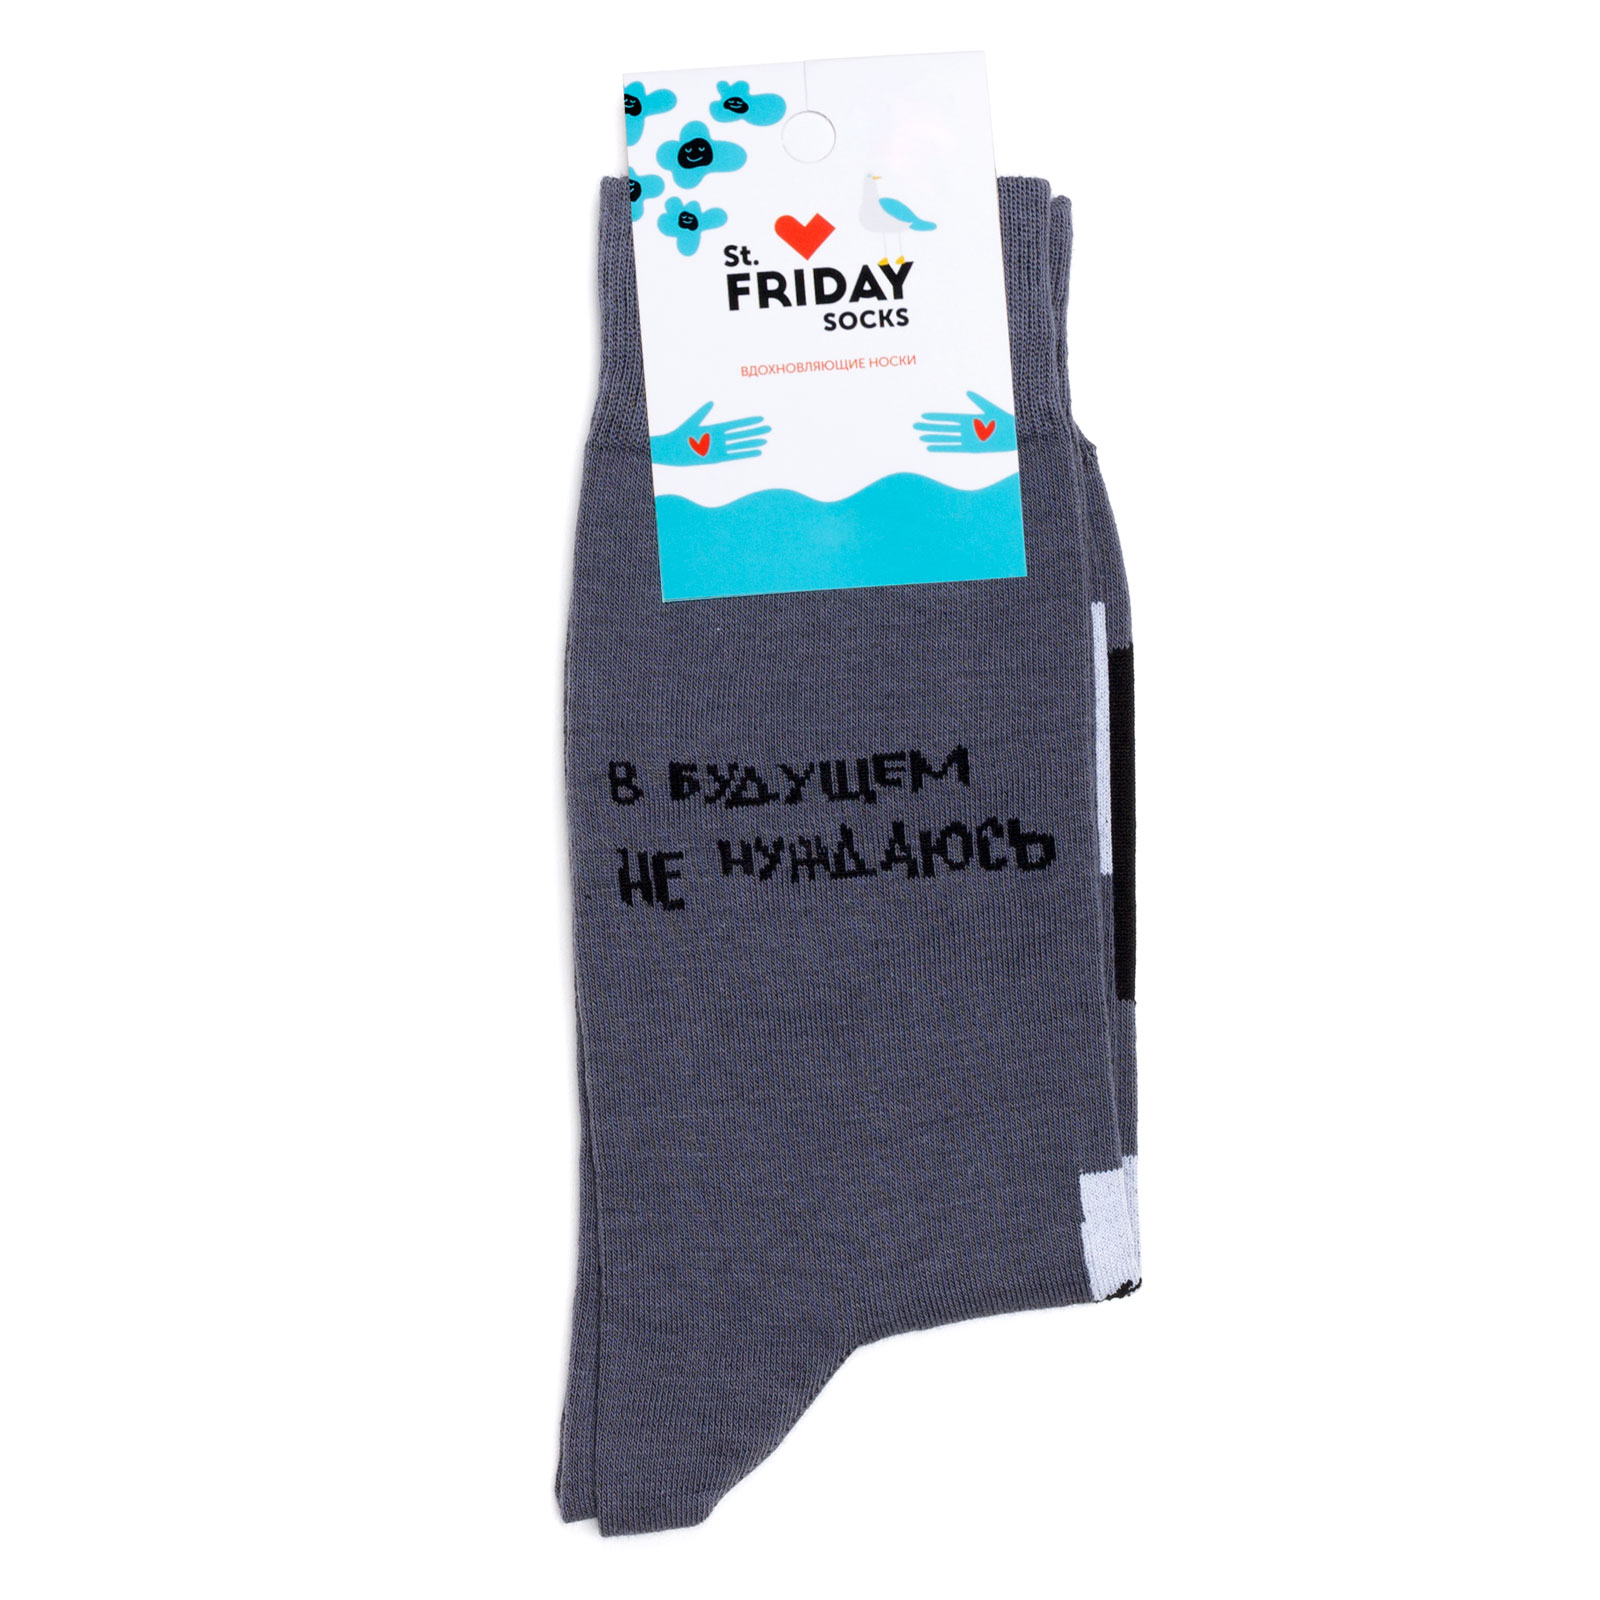 Носки с надписями St.Friday Socks x ЧТАК - В будущем не нуждаюсь 38-41